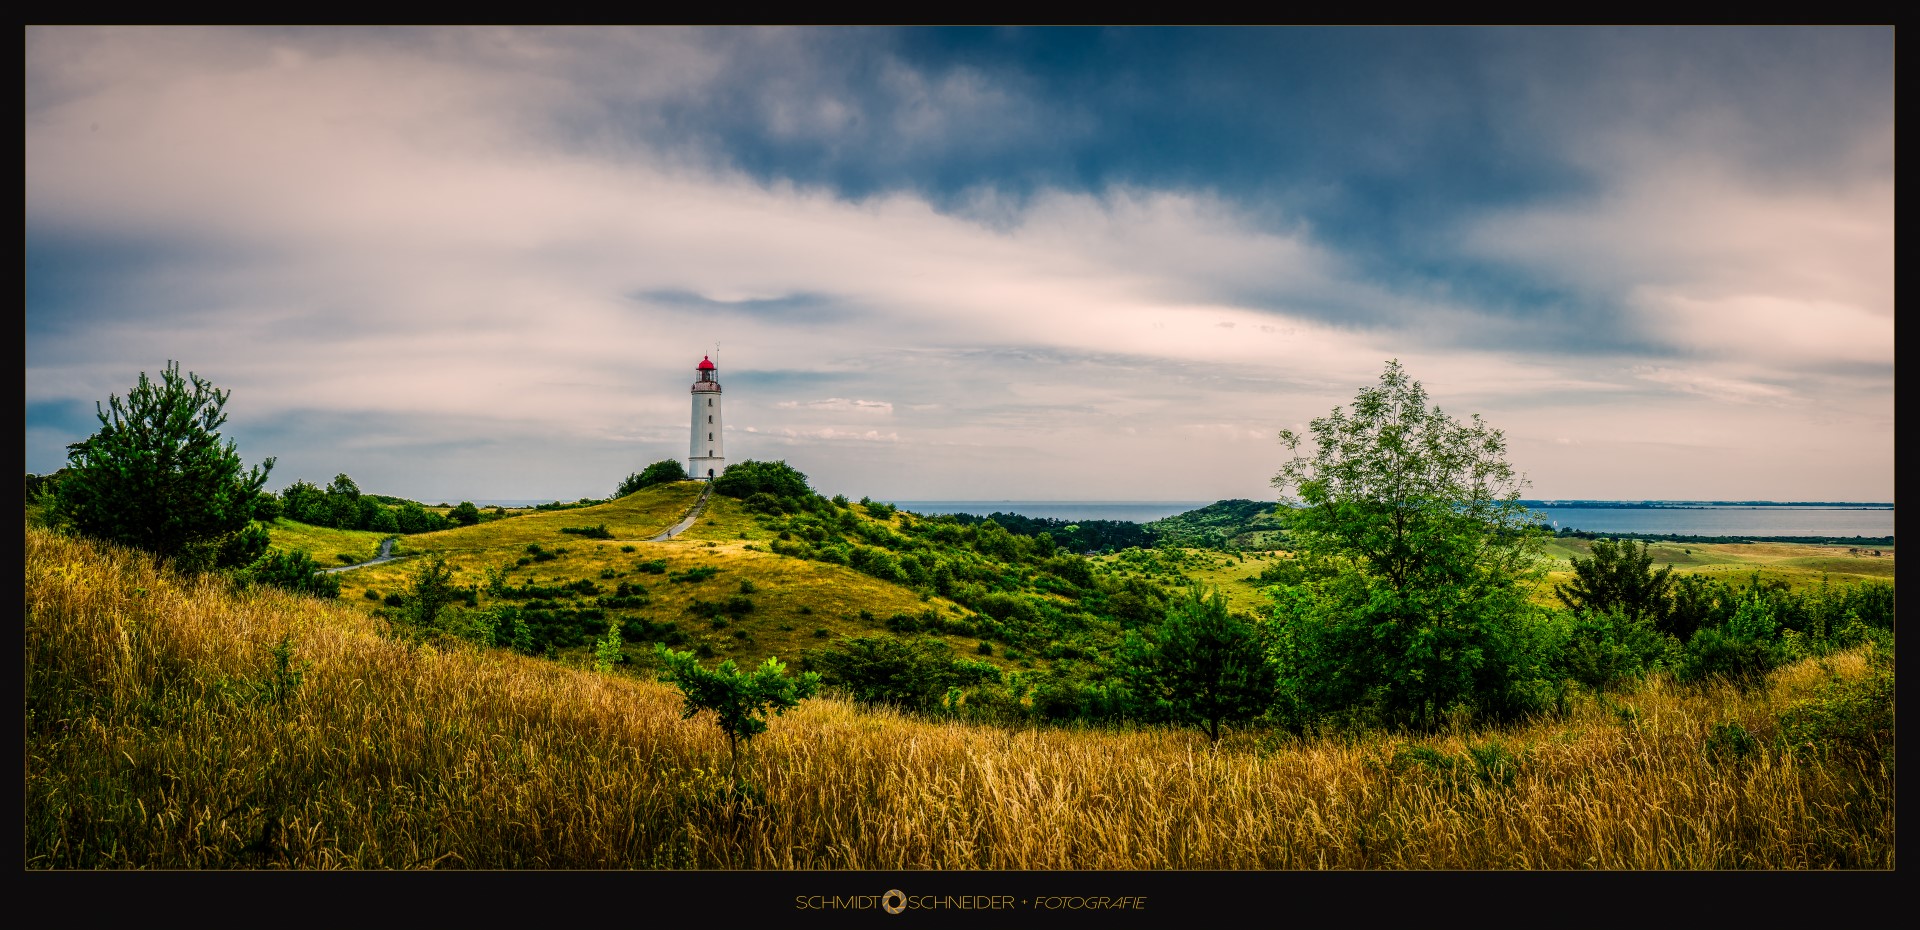 Der Leuchtturm im Norden der Insel Hiddensee